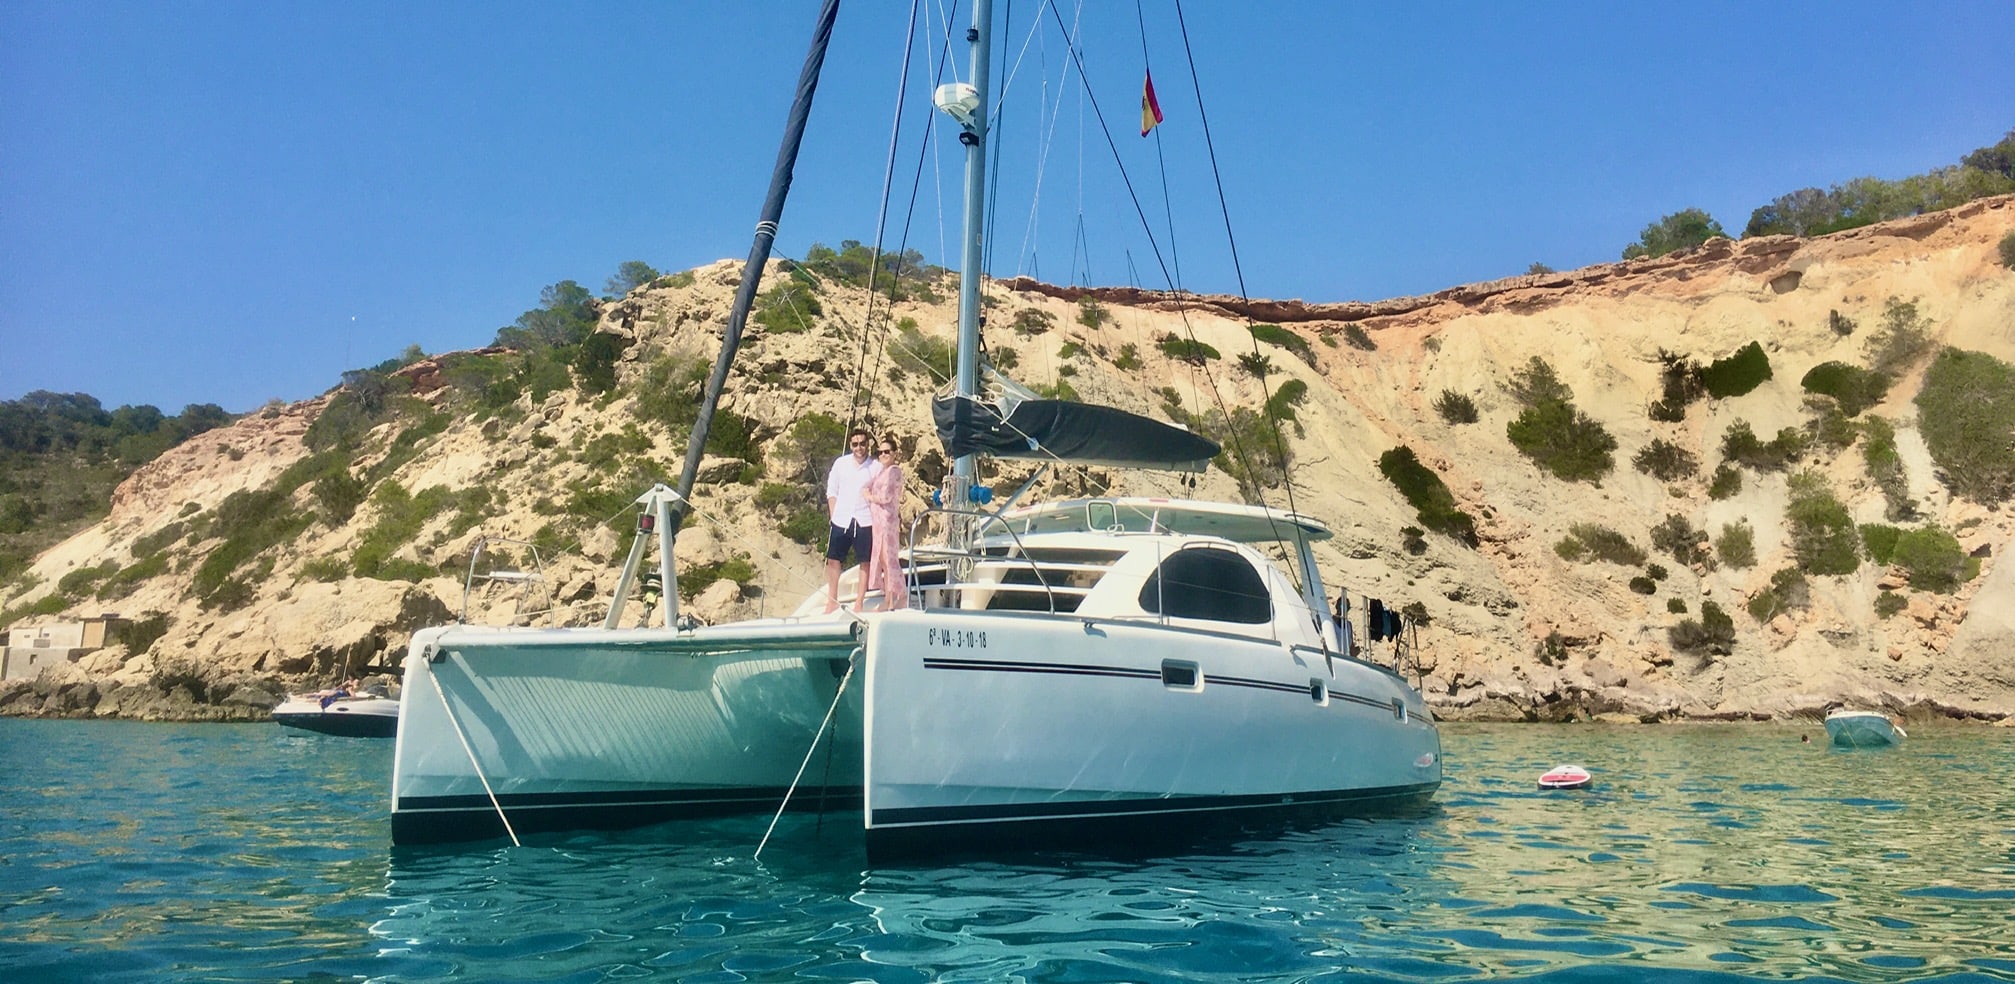 Viaje de novios Ibiza, pareja en proa de nuestro catamaran Geronimo